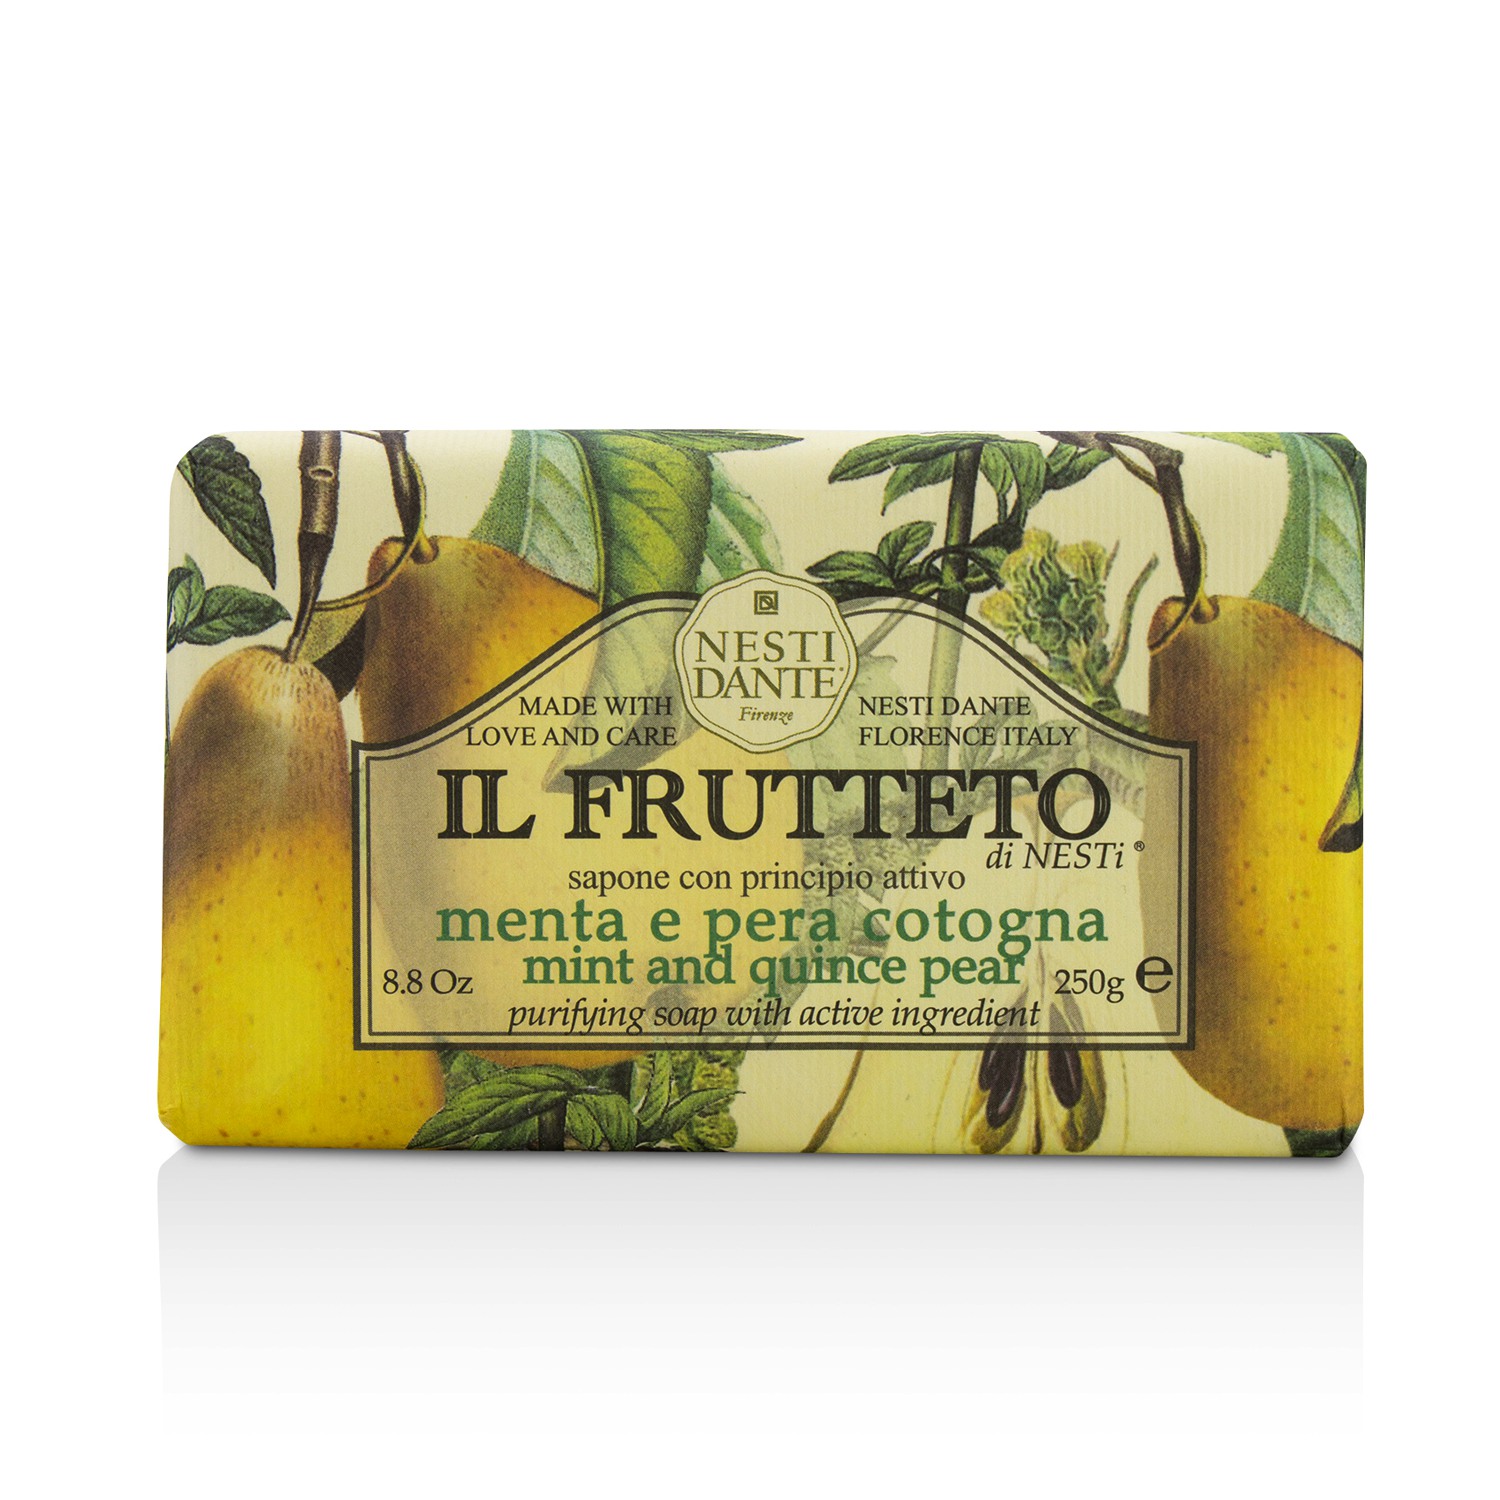 Il Frutteto Purifying Soap - Mint & Quince Pear Nesti Dante Image